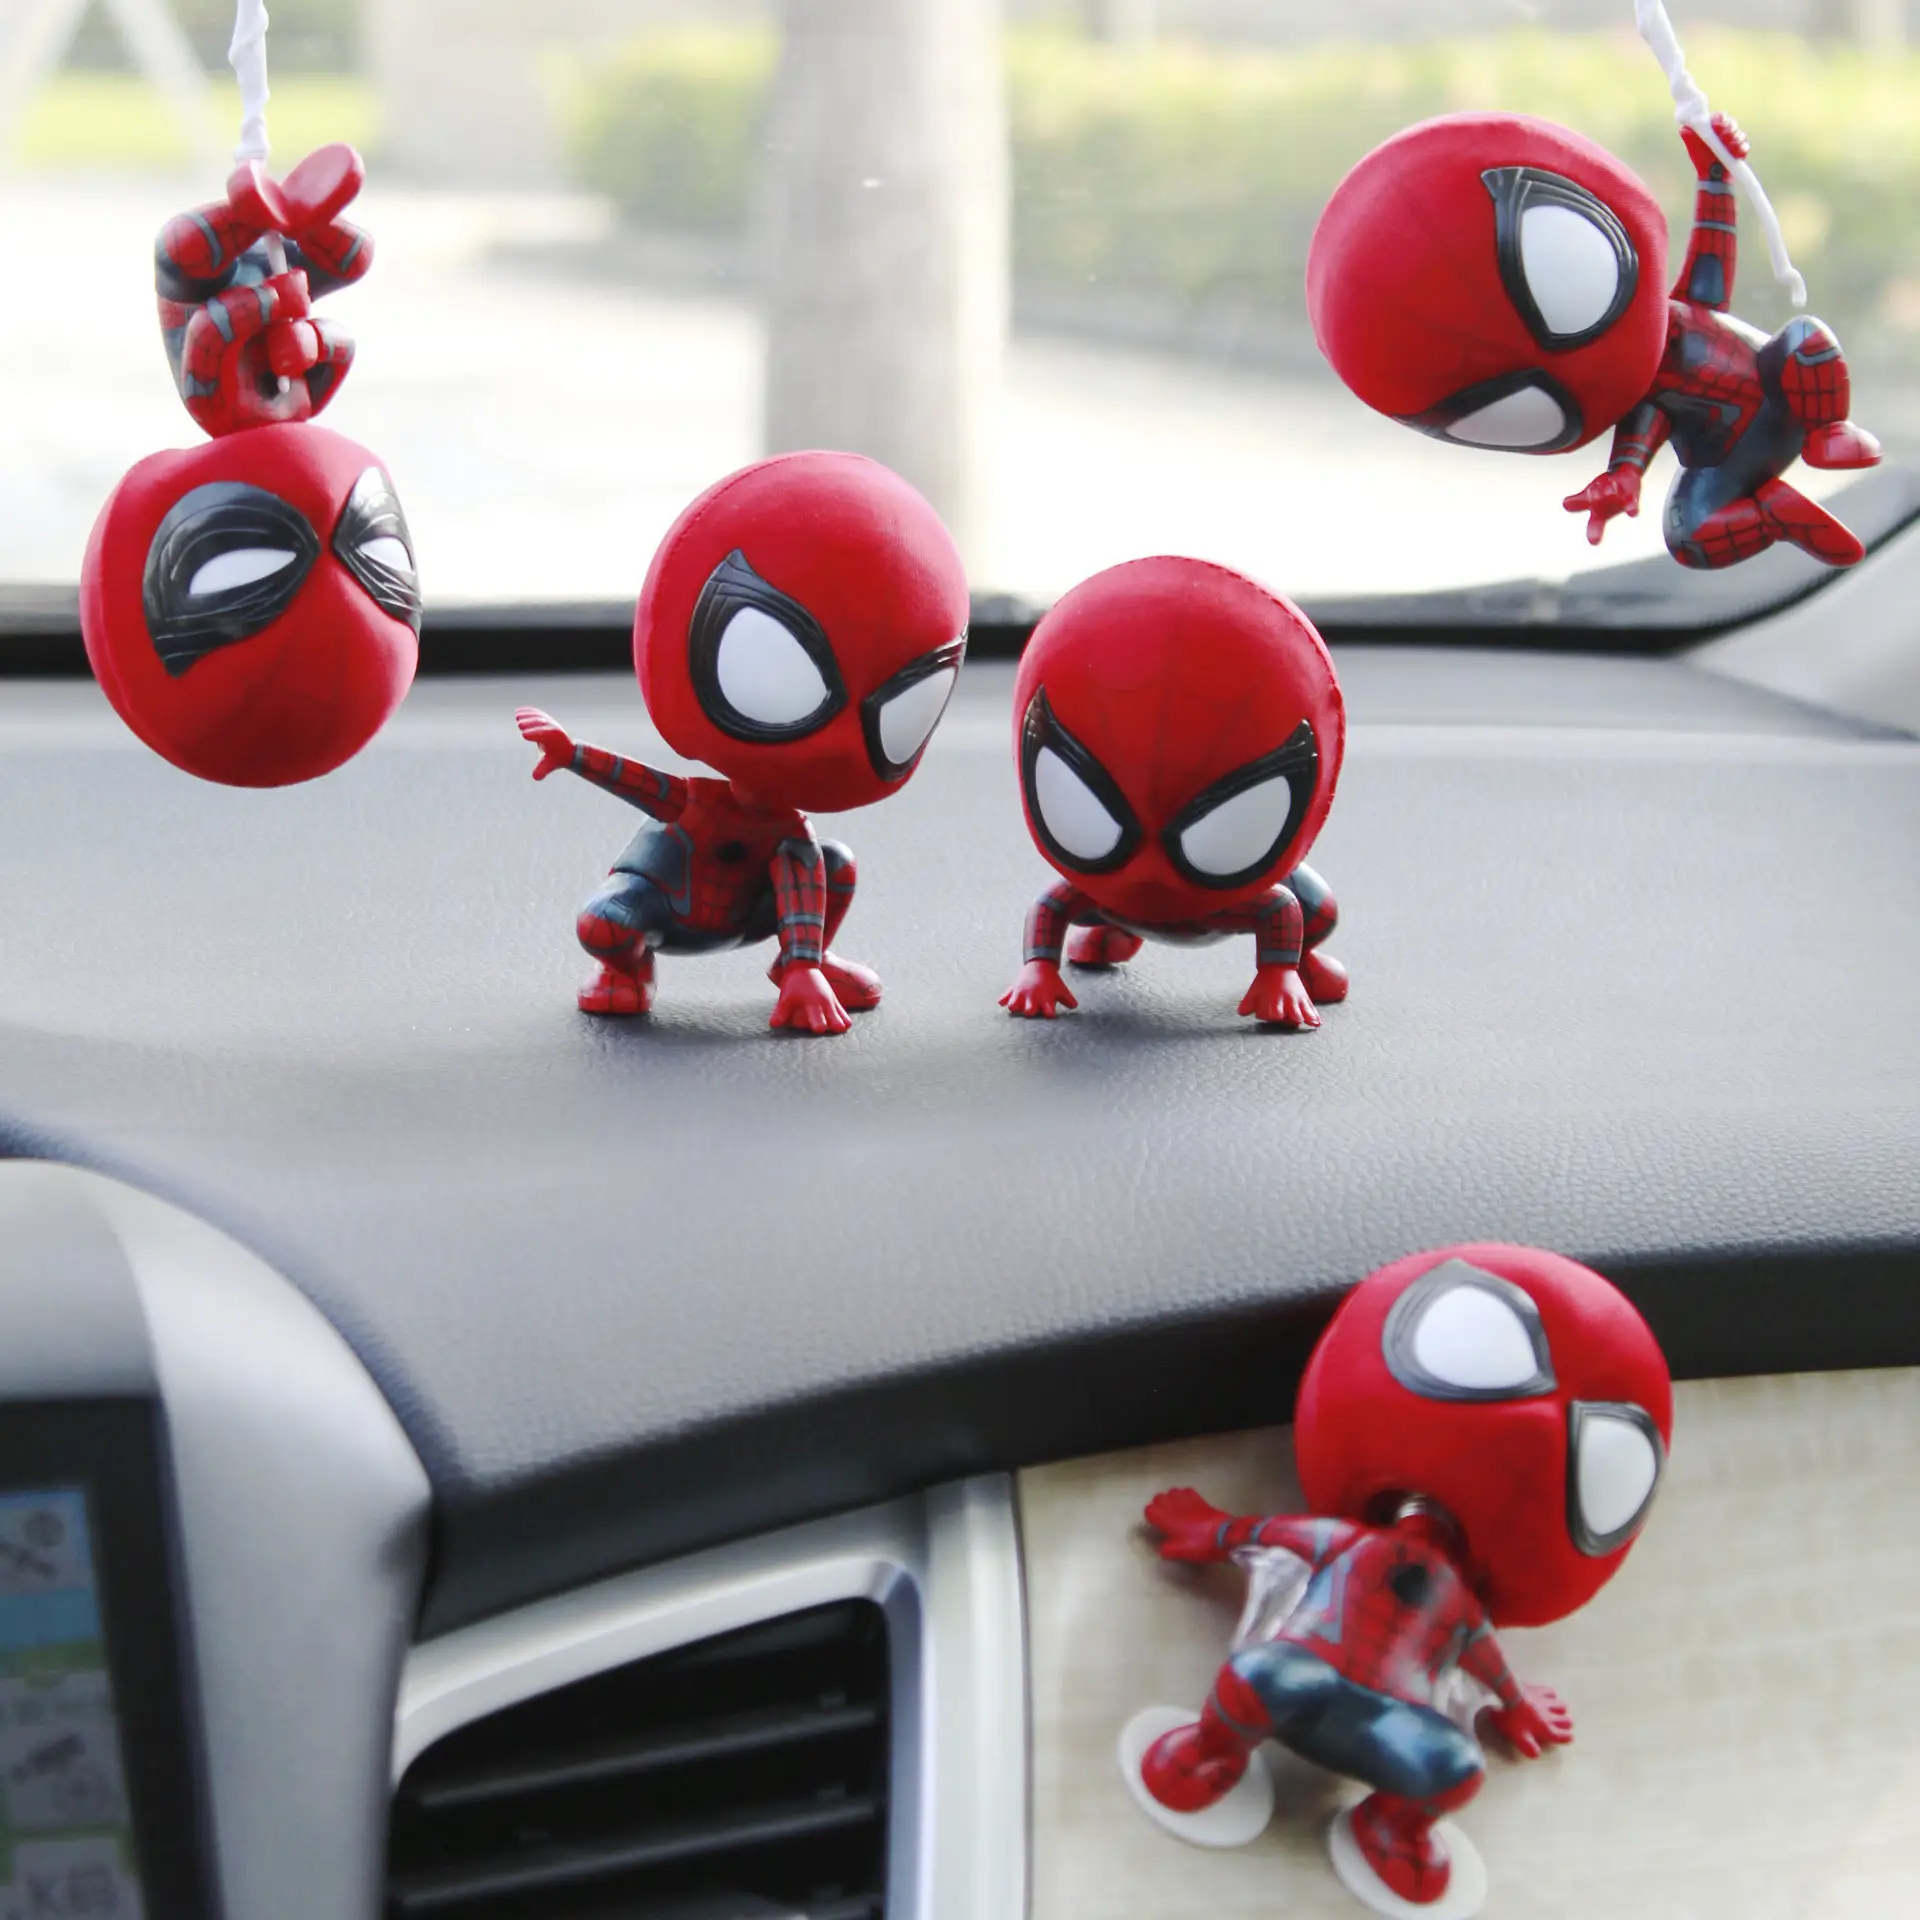 Die erstaunliche heiße Spiderman Wunder Modell Spielzeug Heimkehr Sammlerstücke Spider-Man Spiderman Action figur